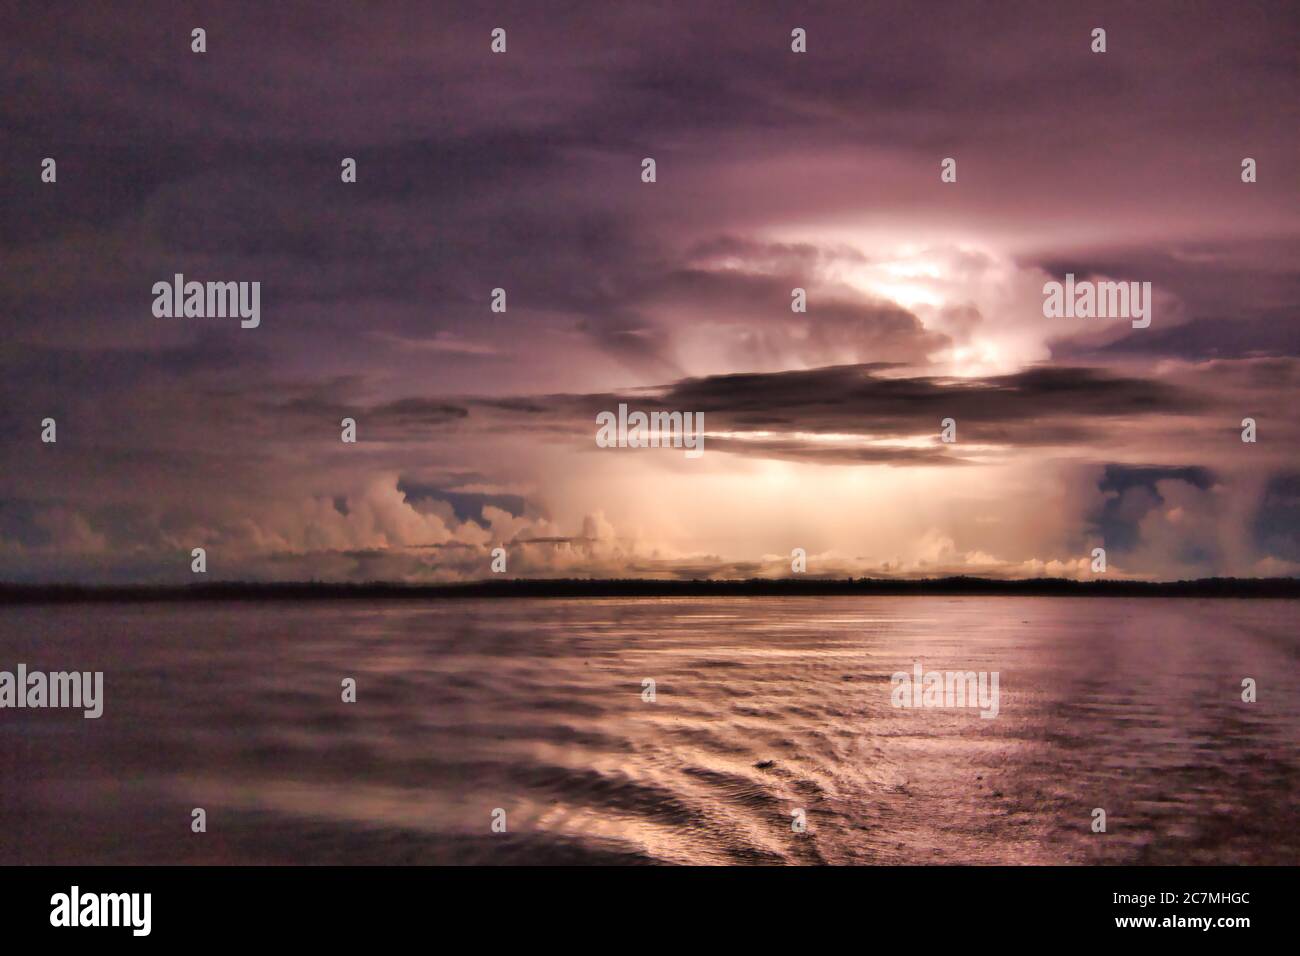 Sfreccia tra le nuvole di notte sul fiume Amazon che illumina le nuvole buie della tempesta dall'interno Foto Stock